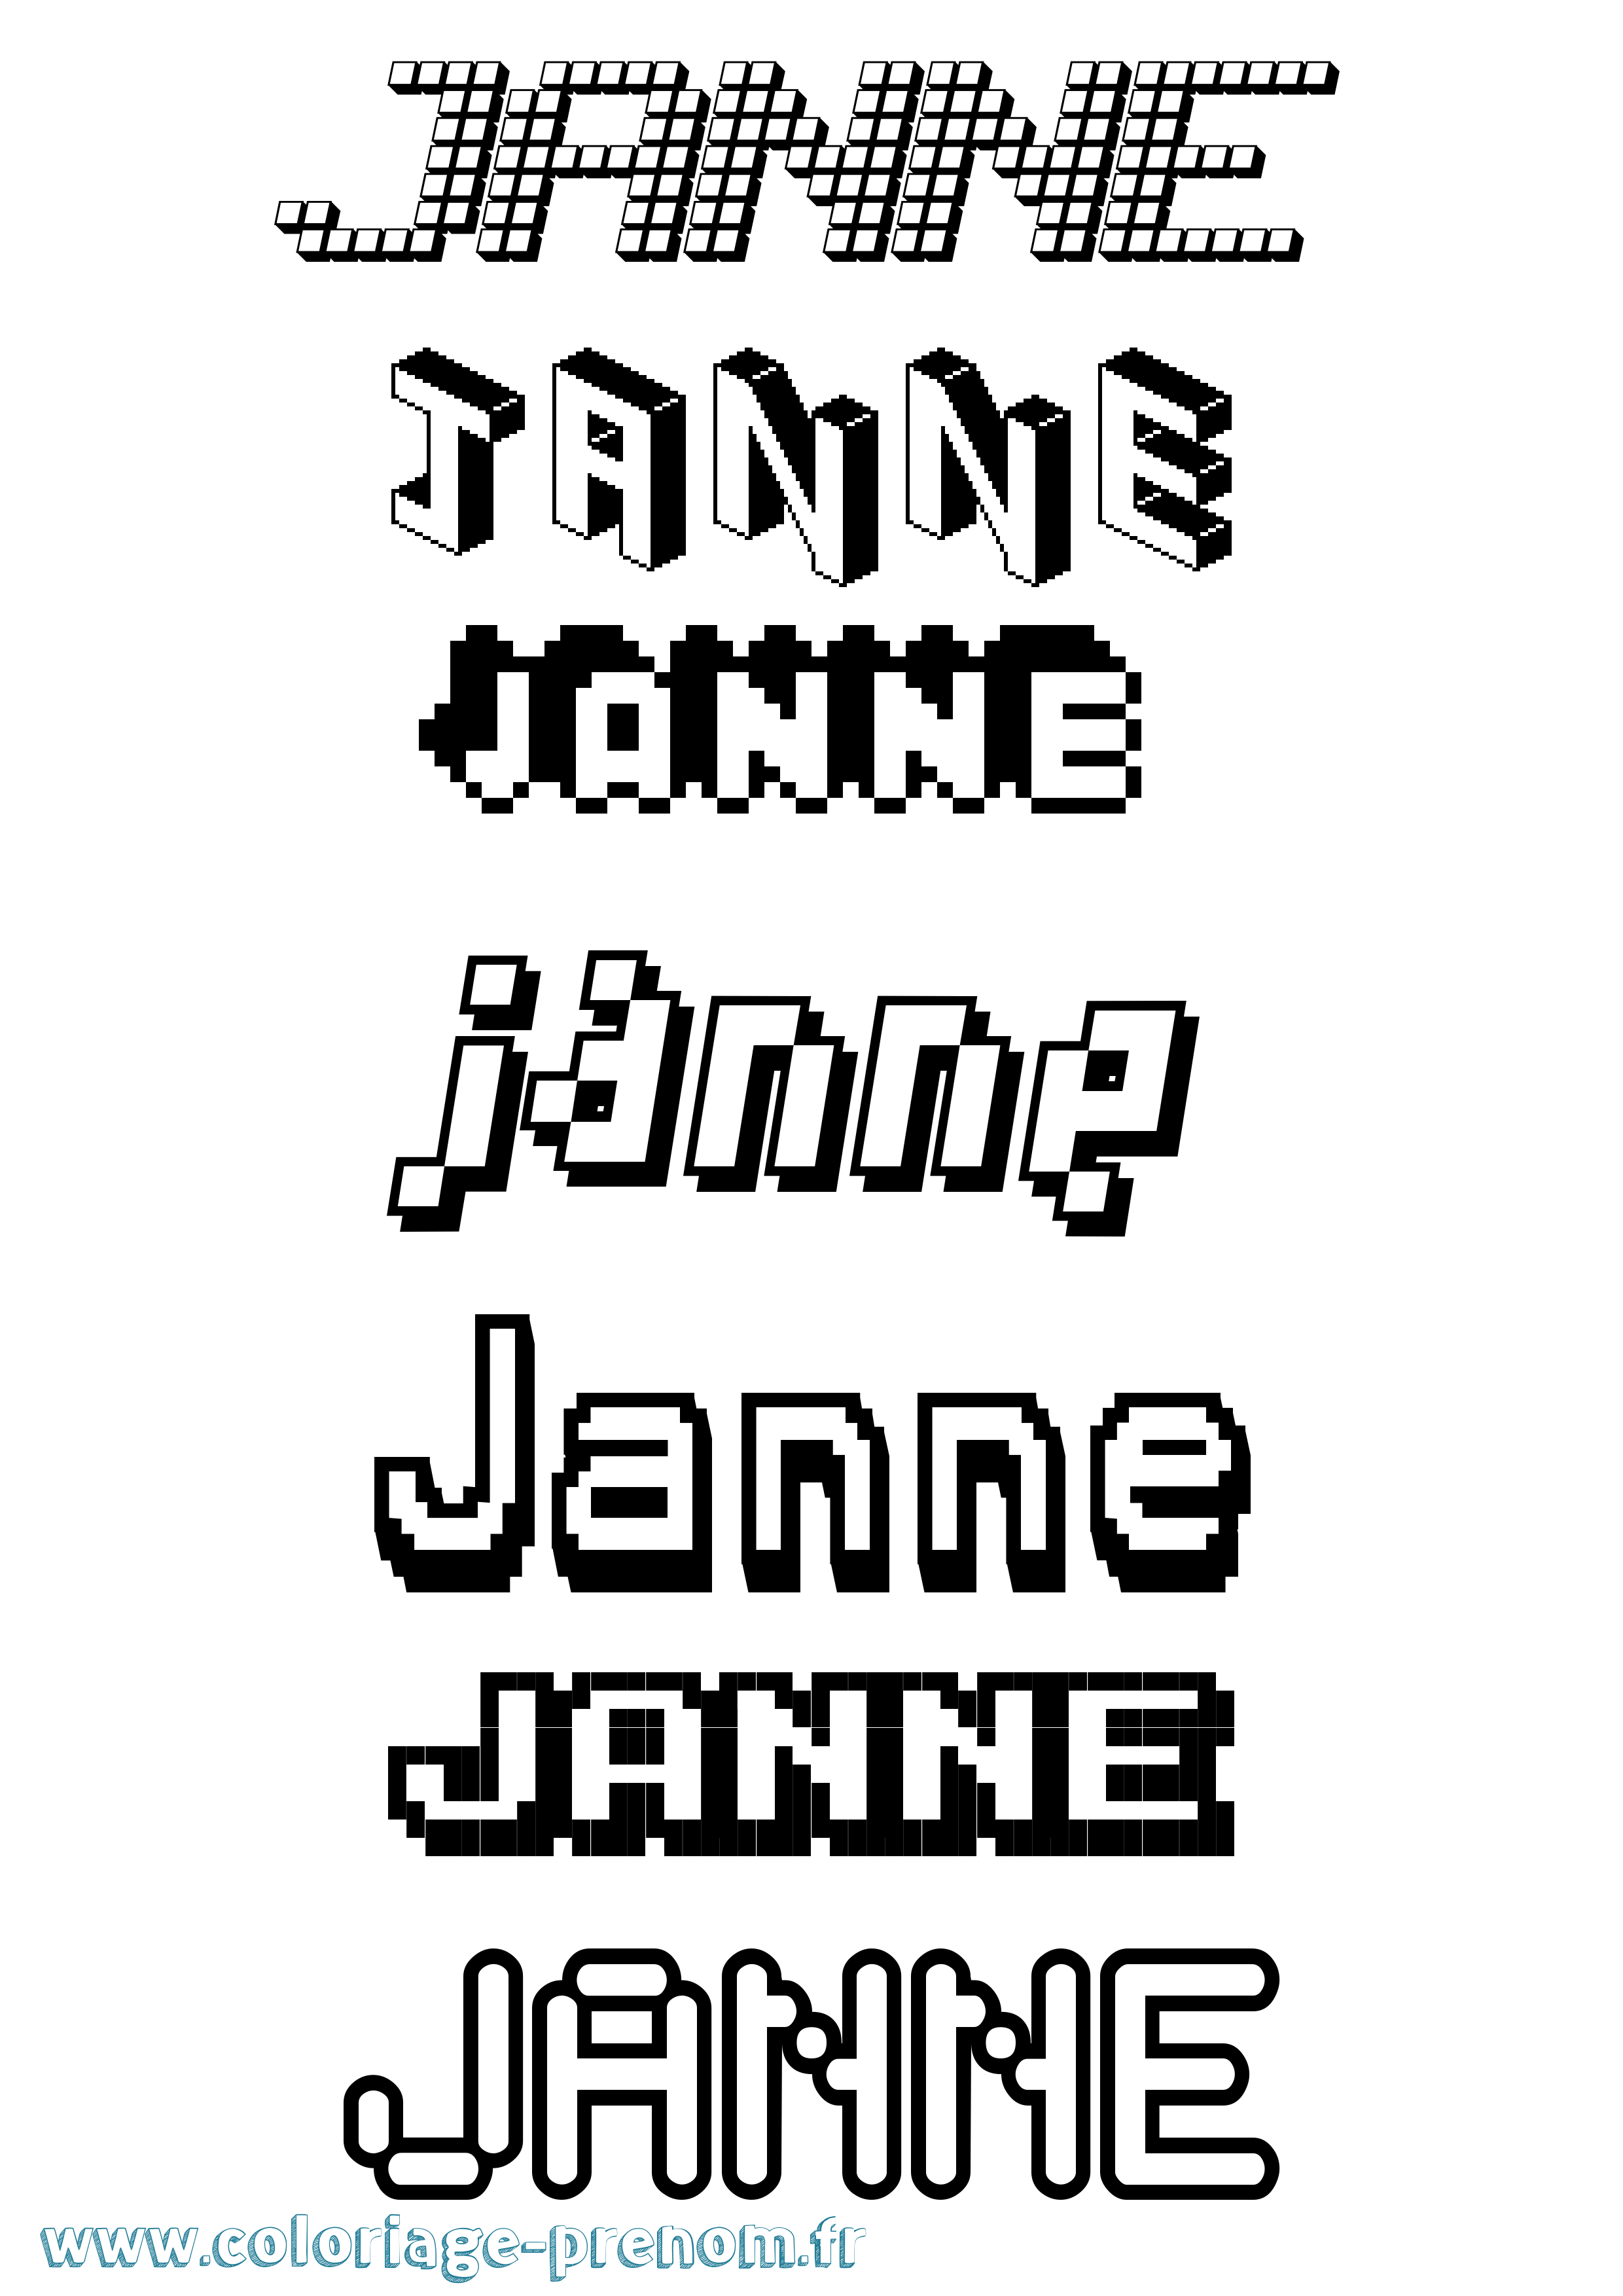 Coloriage prénom Janne Pixel